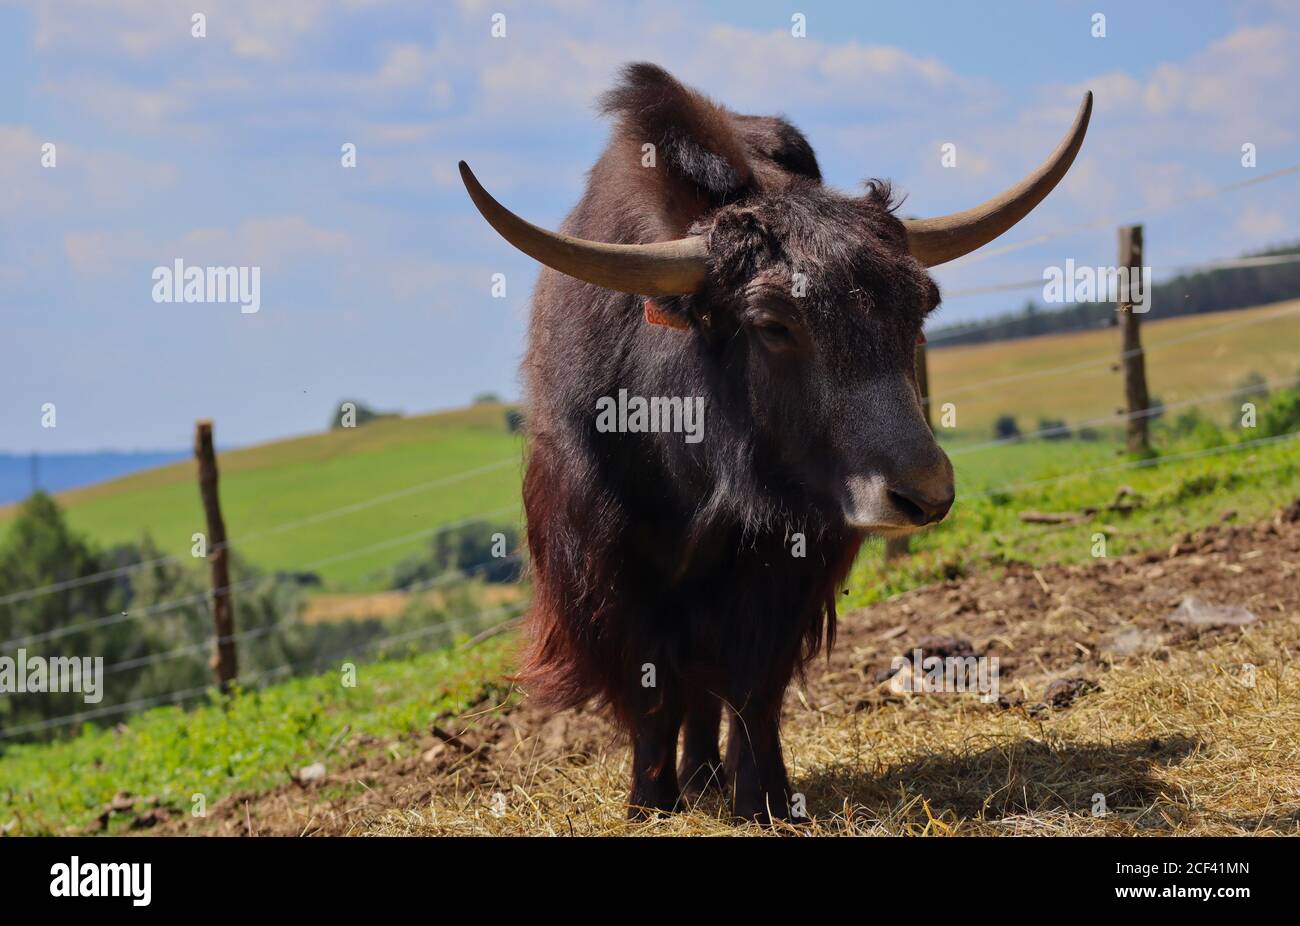 Inländischer Yak (Bos grunniens) ist ein langhaariger domestizierter Bovid. Big Heavy Bull Tier während Sonnentag im Tschechischen Bauernhof Park. Stockfoto